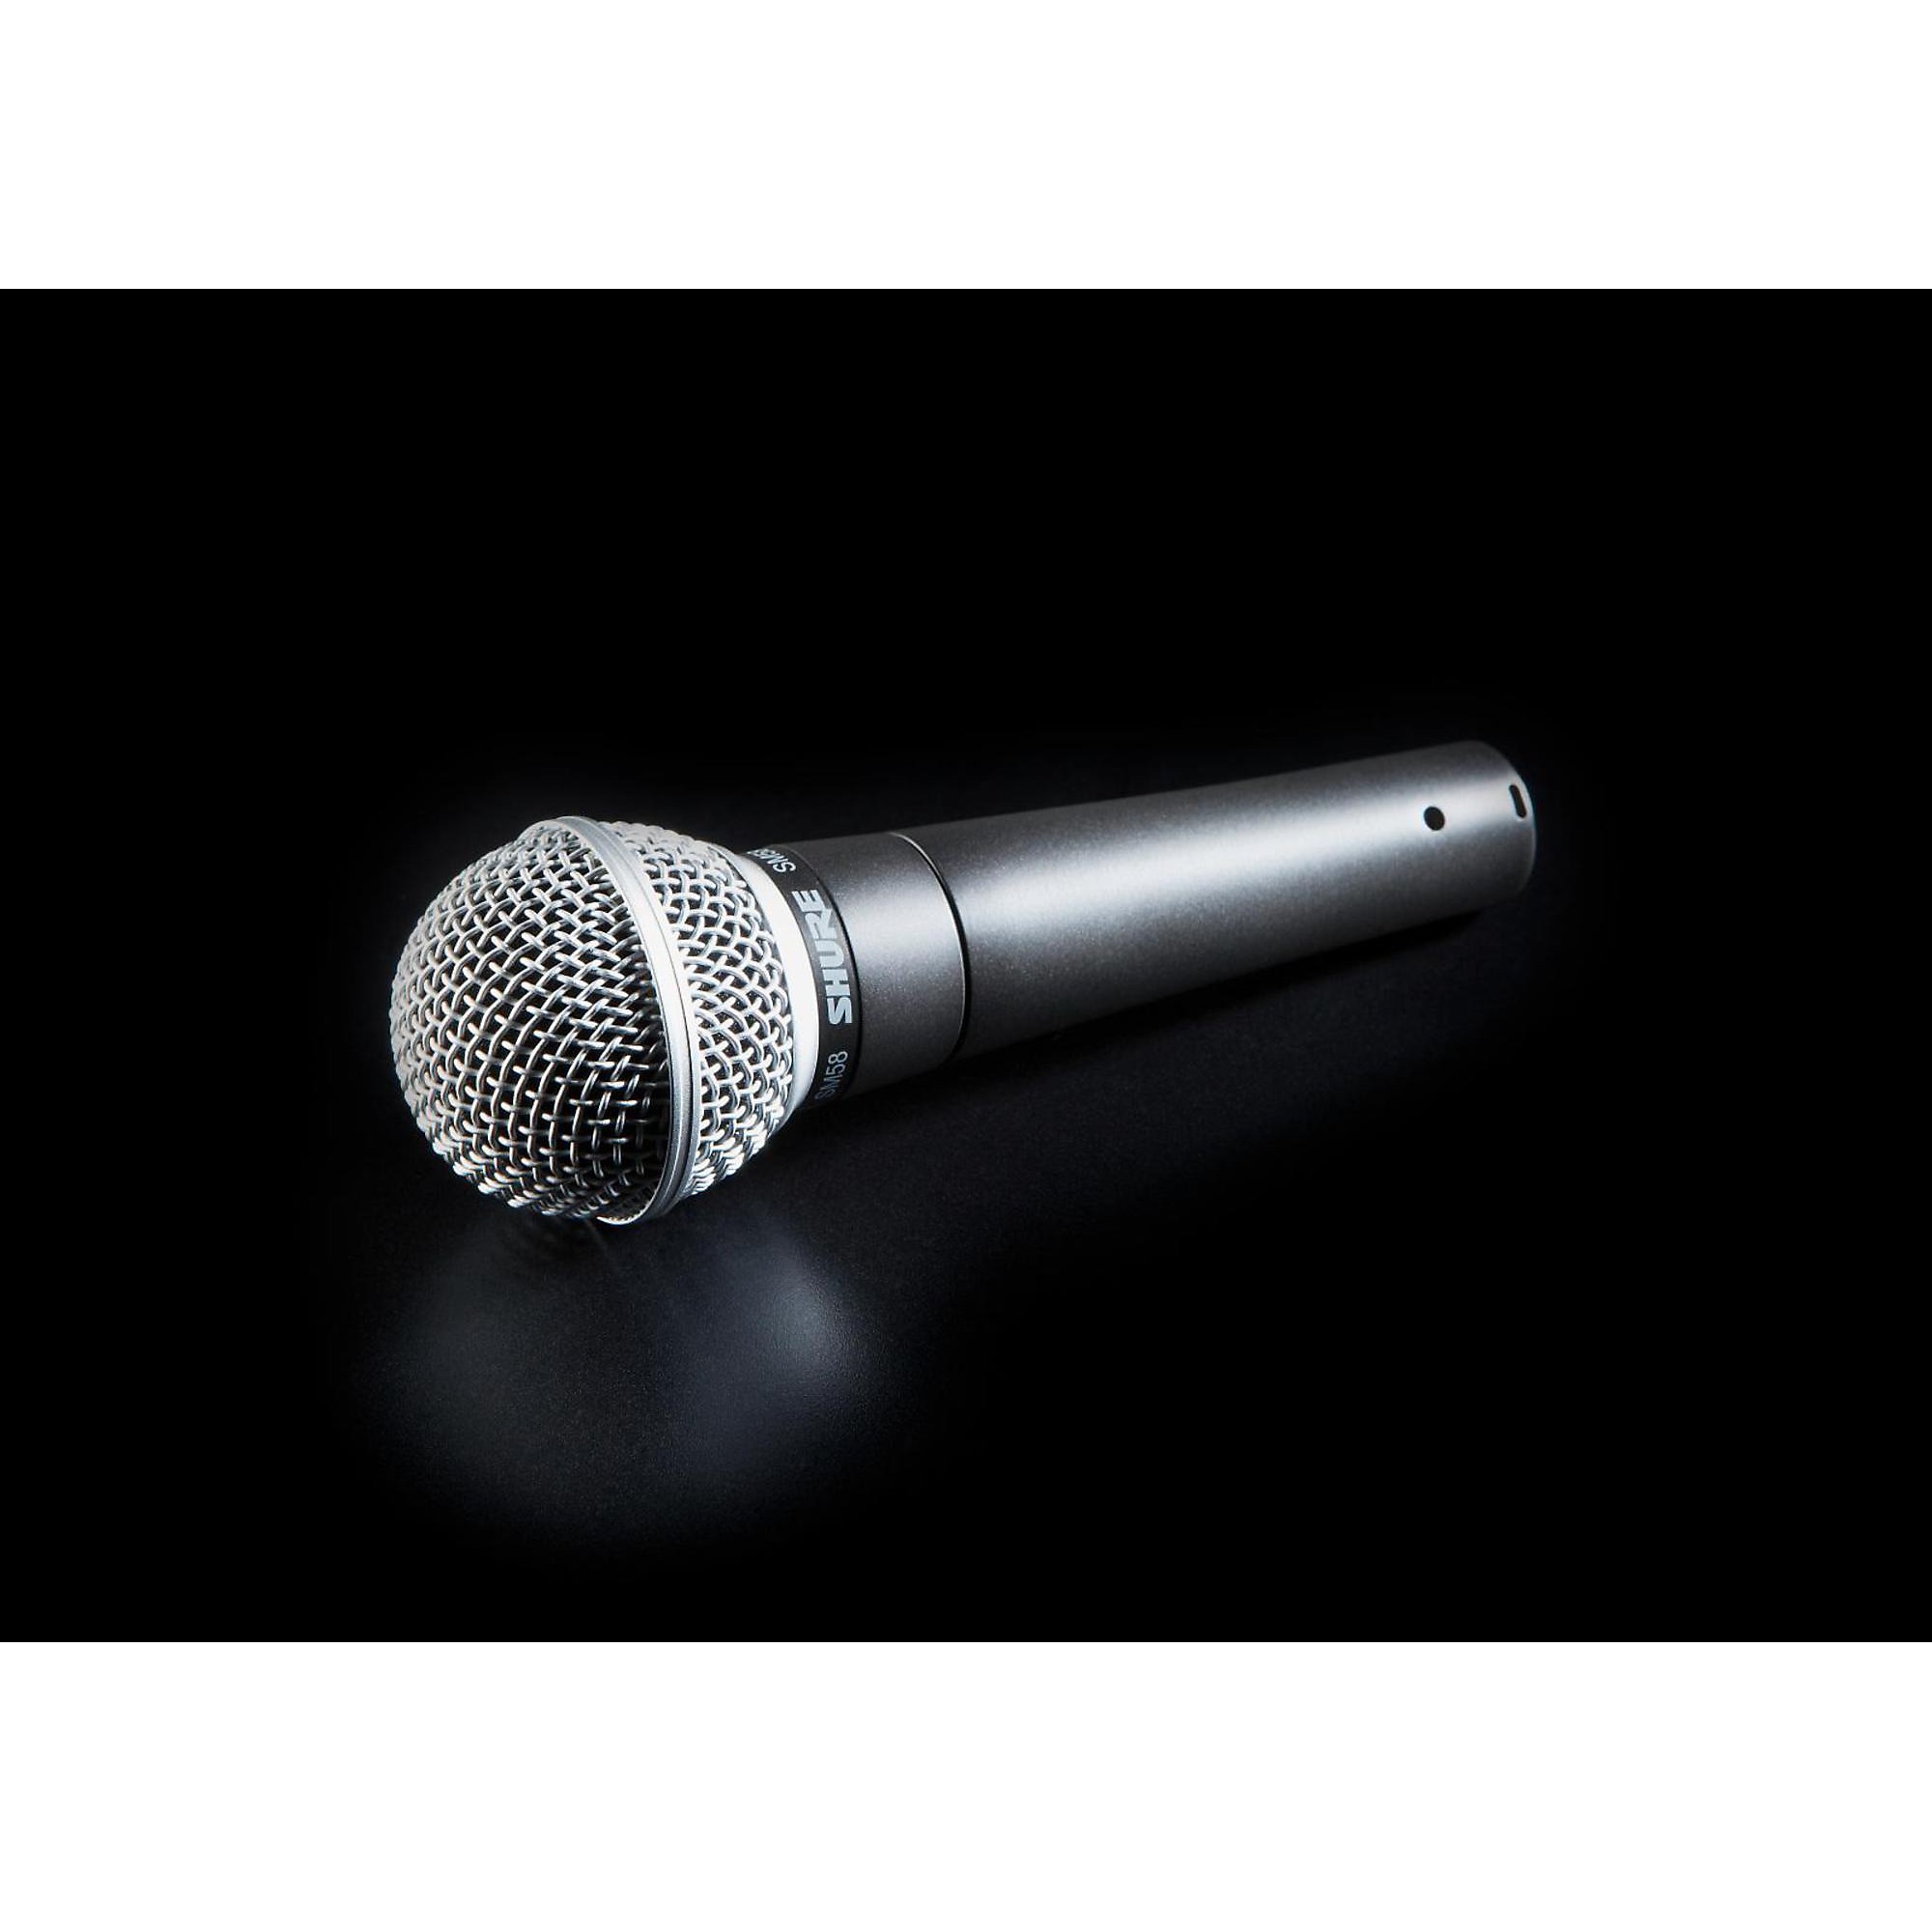 Shure - Sm58-lce Microphone Dynamique 